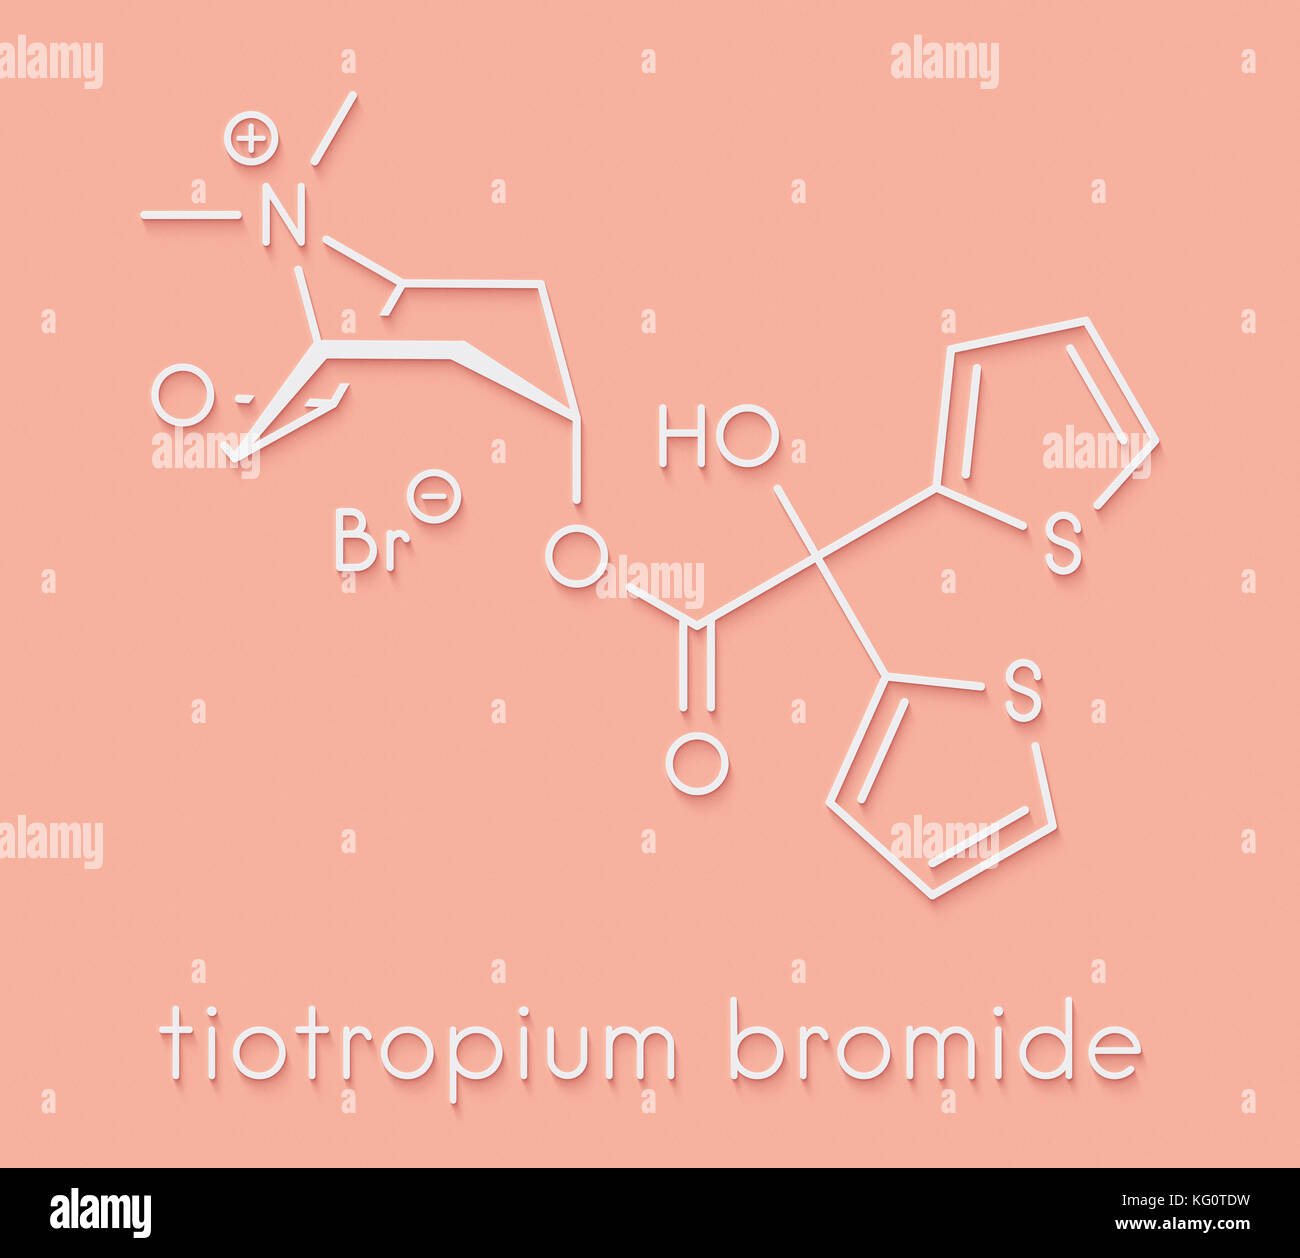 Bromure de tiotropium la bronchopneumopathie chronique obstructive (BPCO) molécule pharmaceutique. formule topologique. Banque D'Images